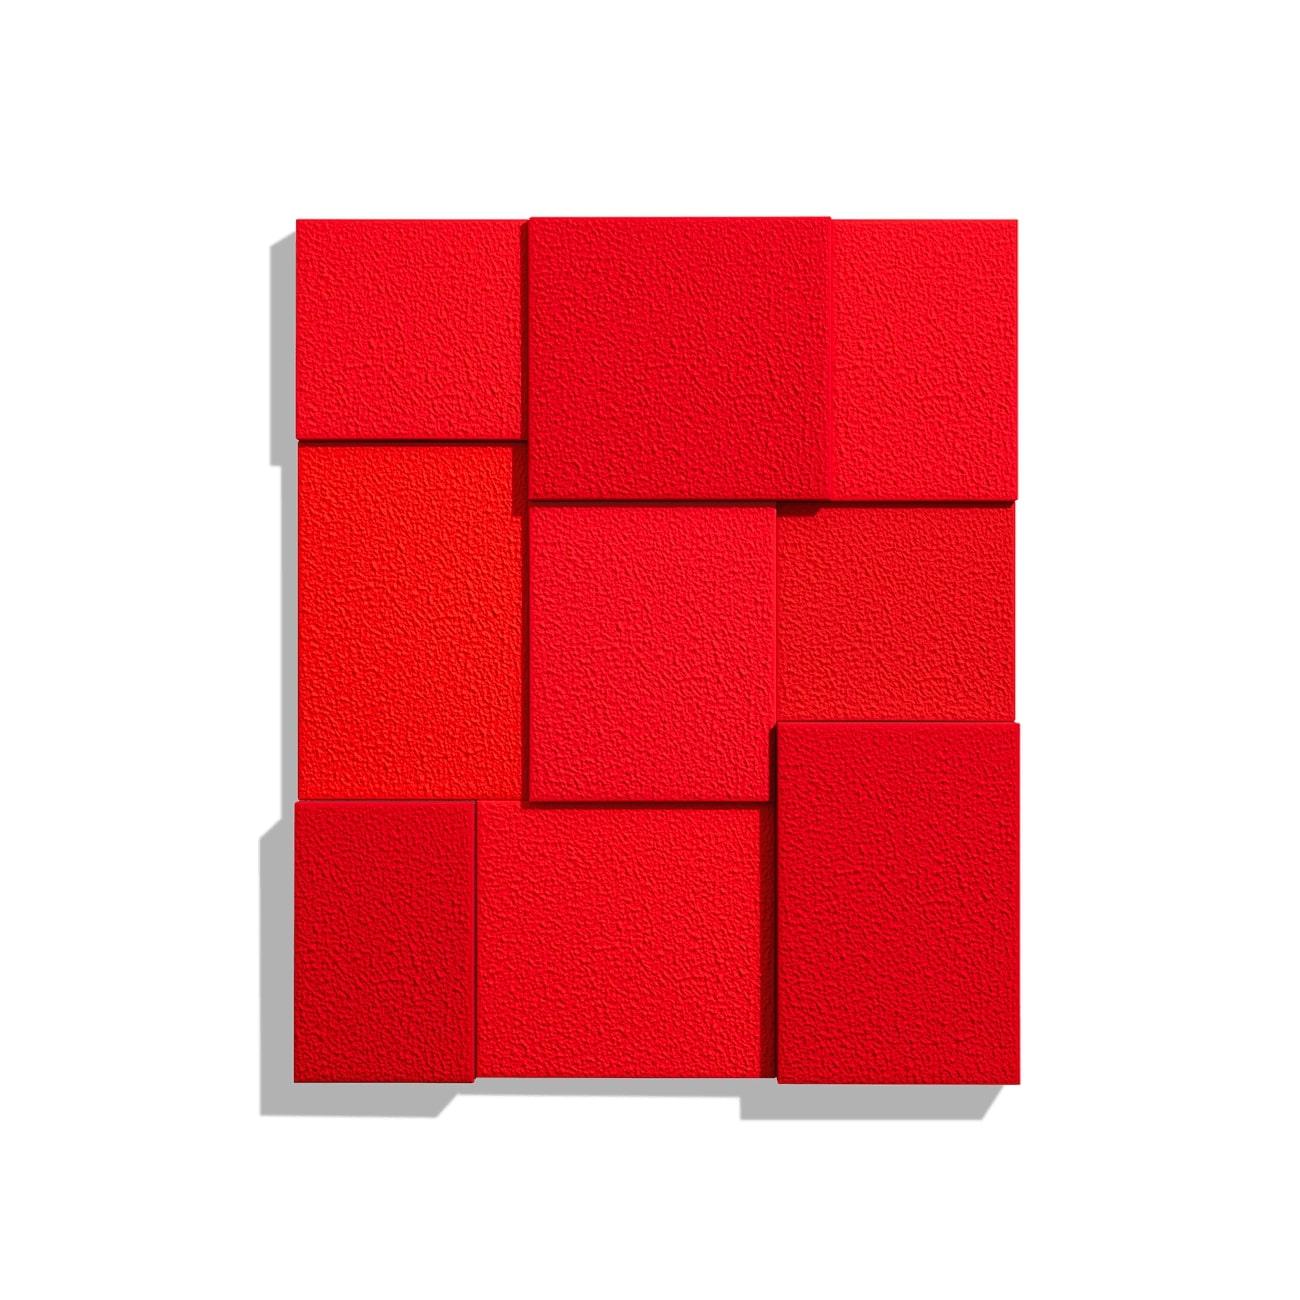 Red, neuf jours - Print de Peter Halley